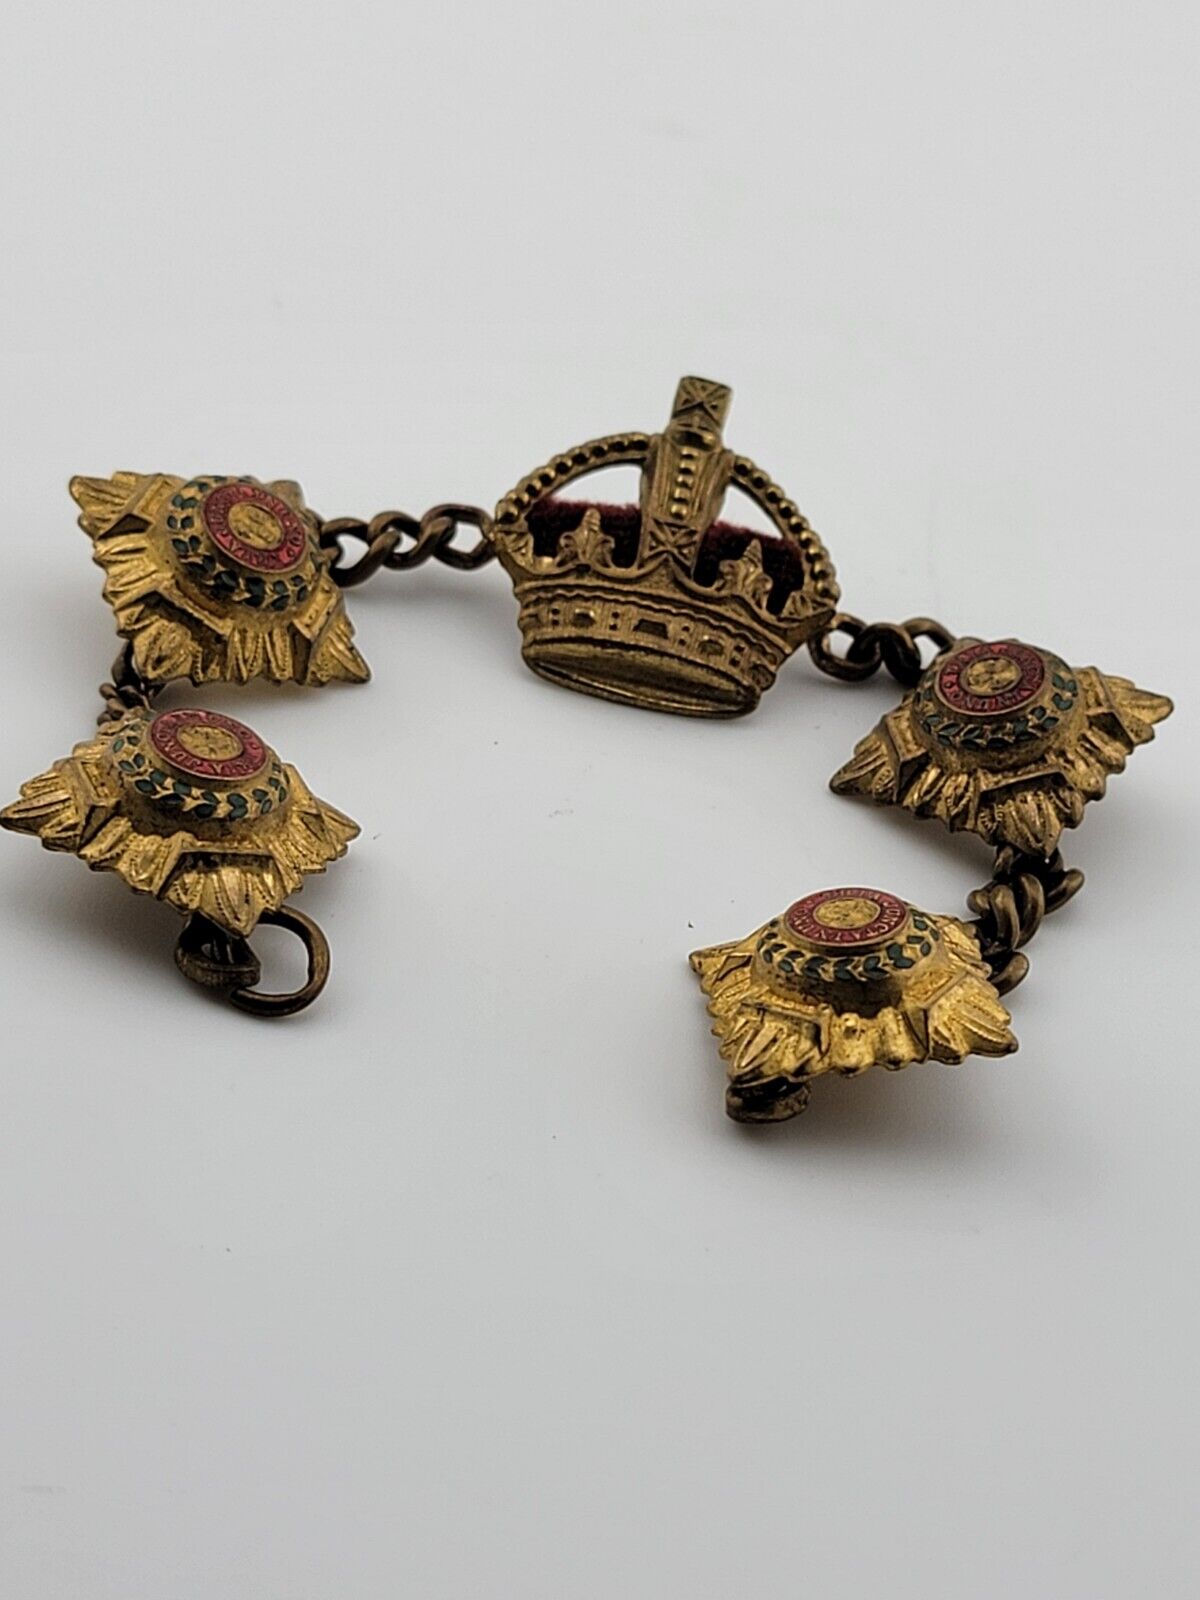 WWII Era Patriotic English British Bracelet/ Medal- Pips & Crown - Military War